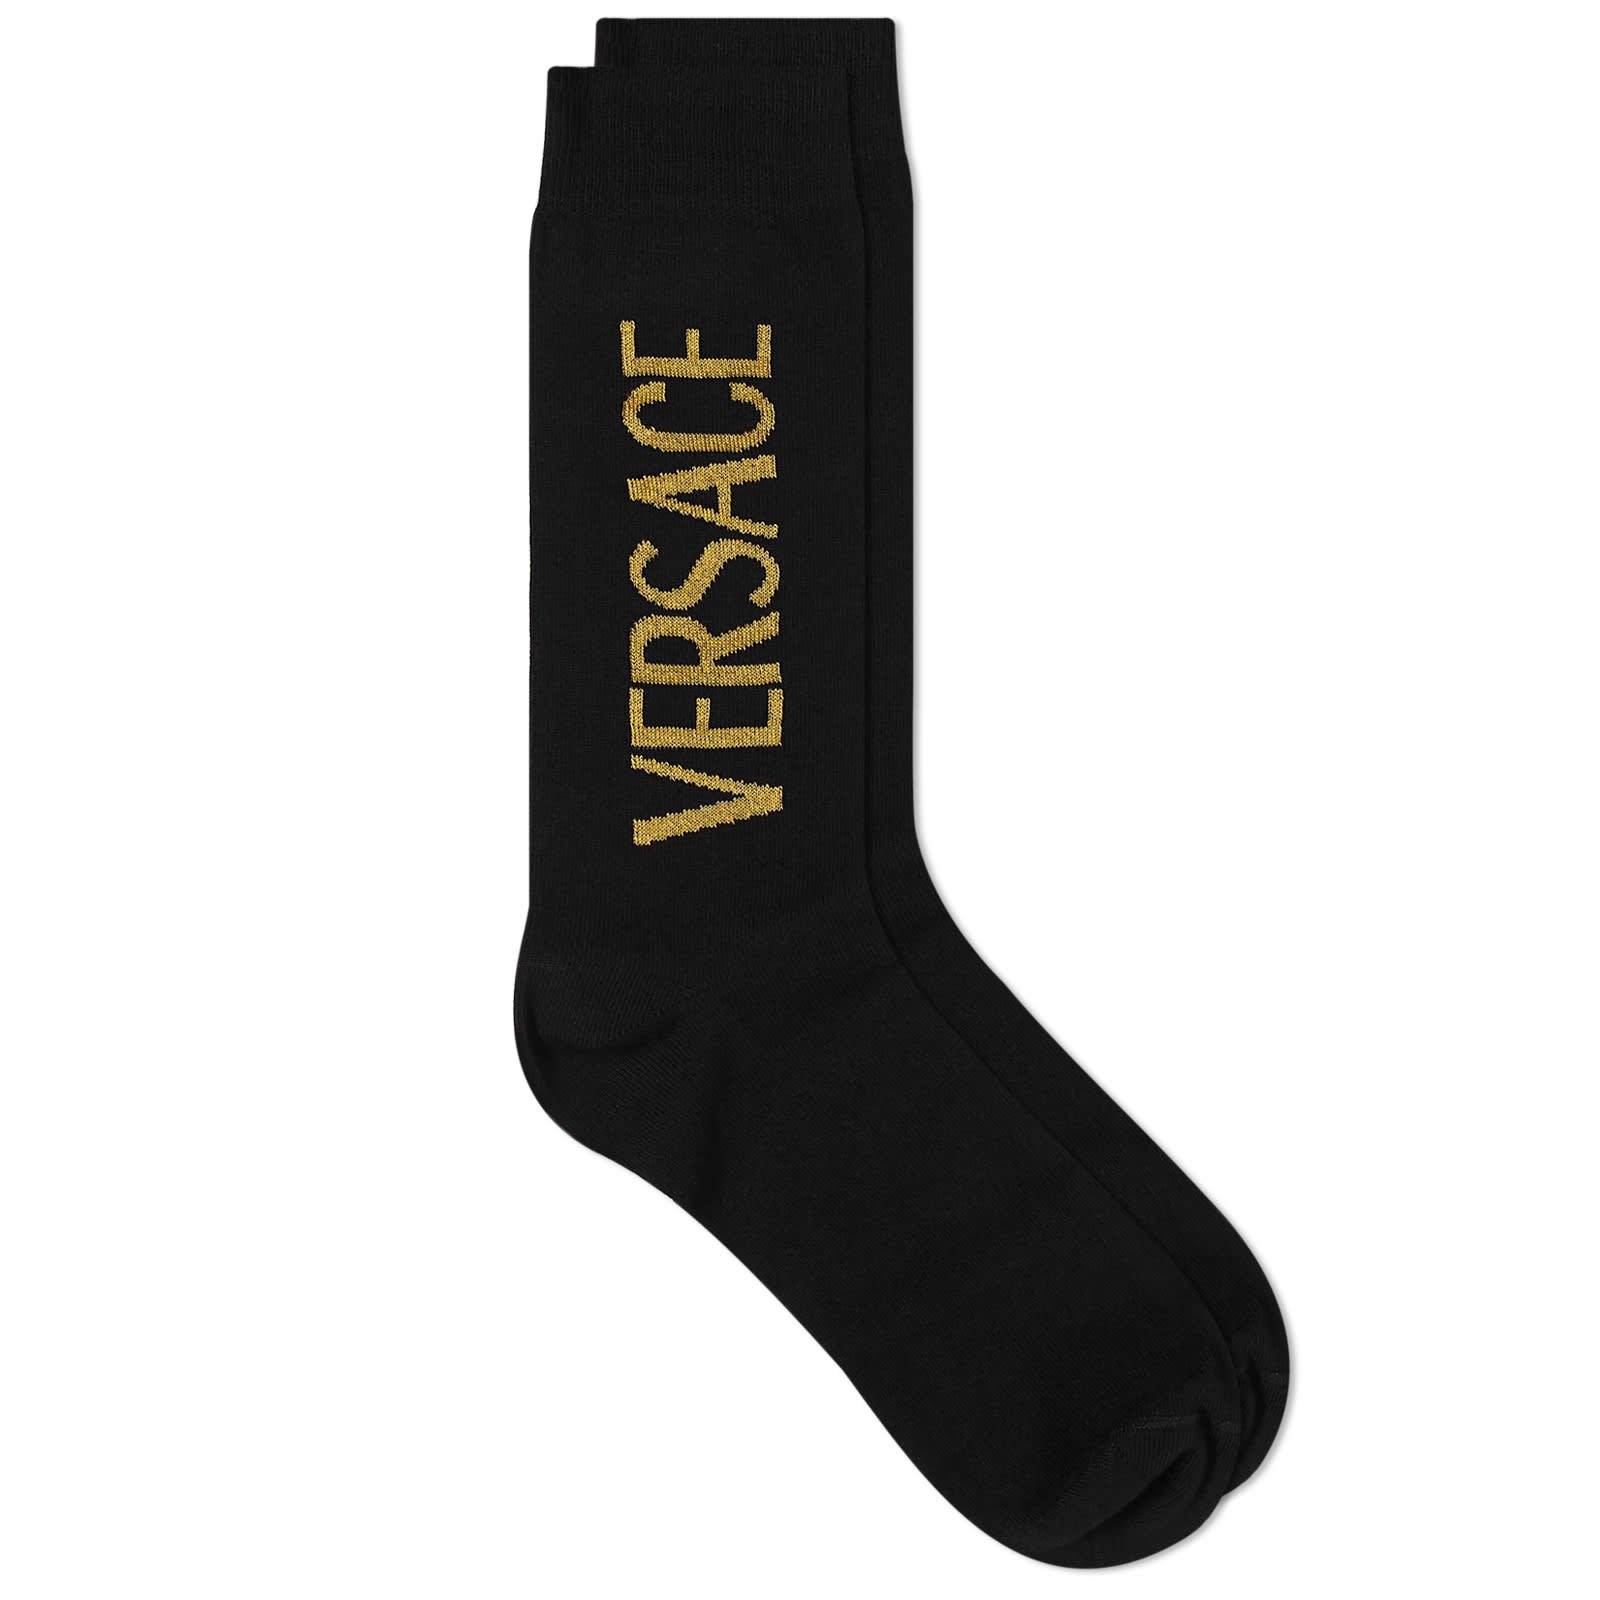 Gianni Versace Mens Socks on Sale | website.jkuat.ac.ke